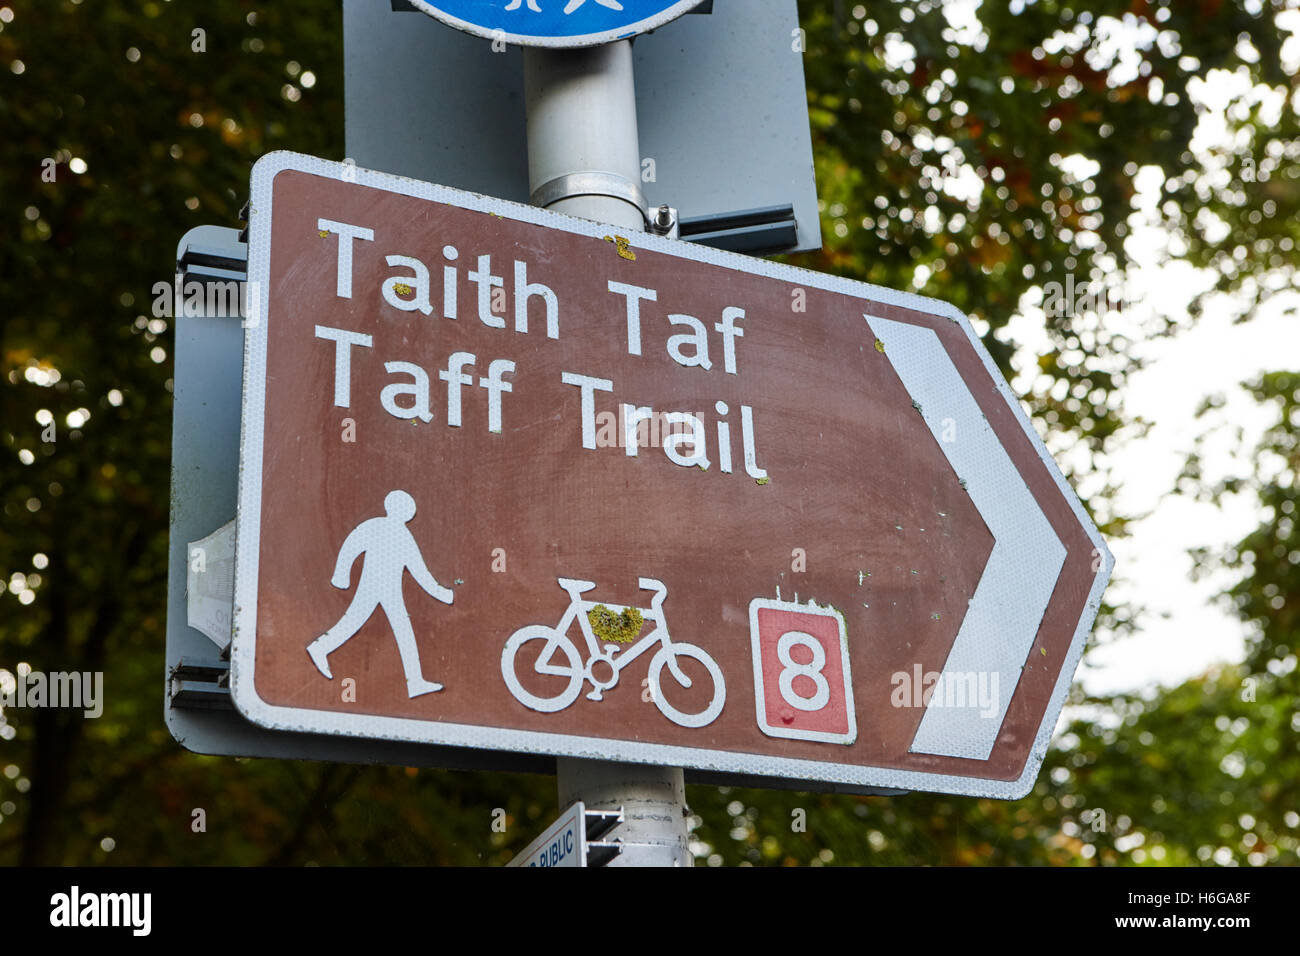 zweisprachige walisische englische Zeichen für die Taff Trail Wander- und Radwege Route durch Cardiff Wales Großbritannien Stockfoto